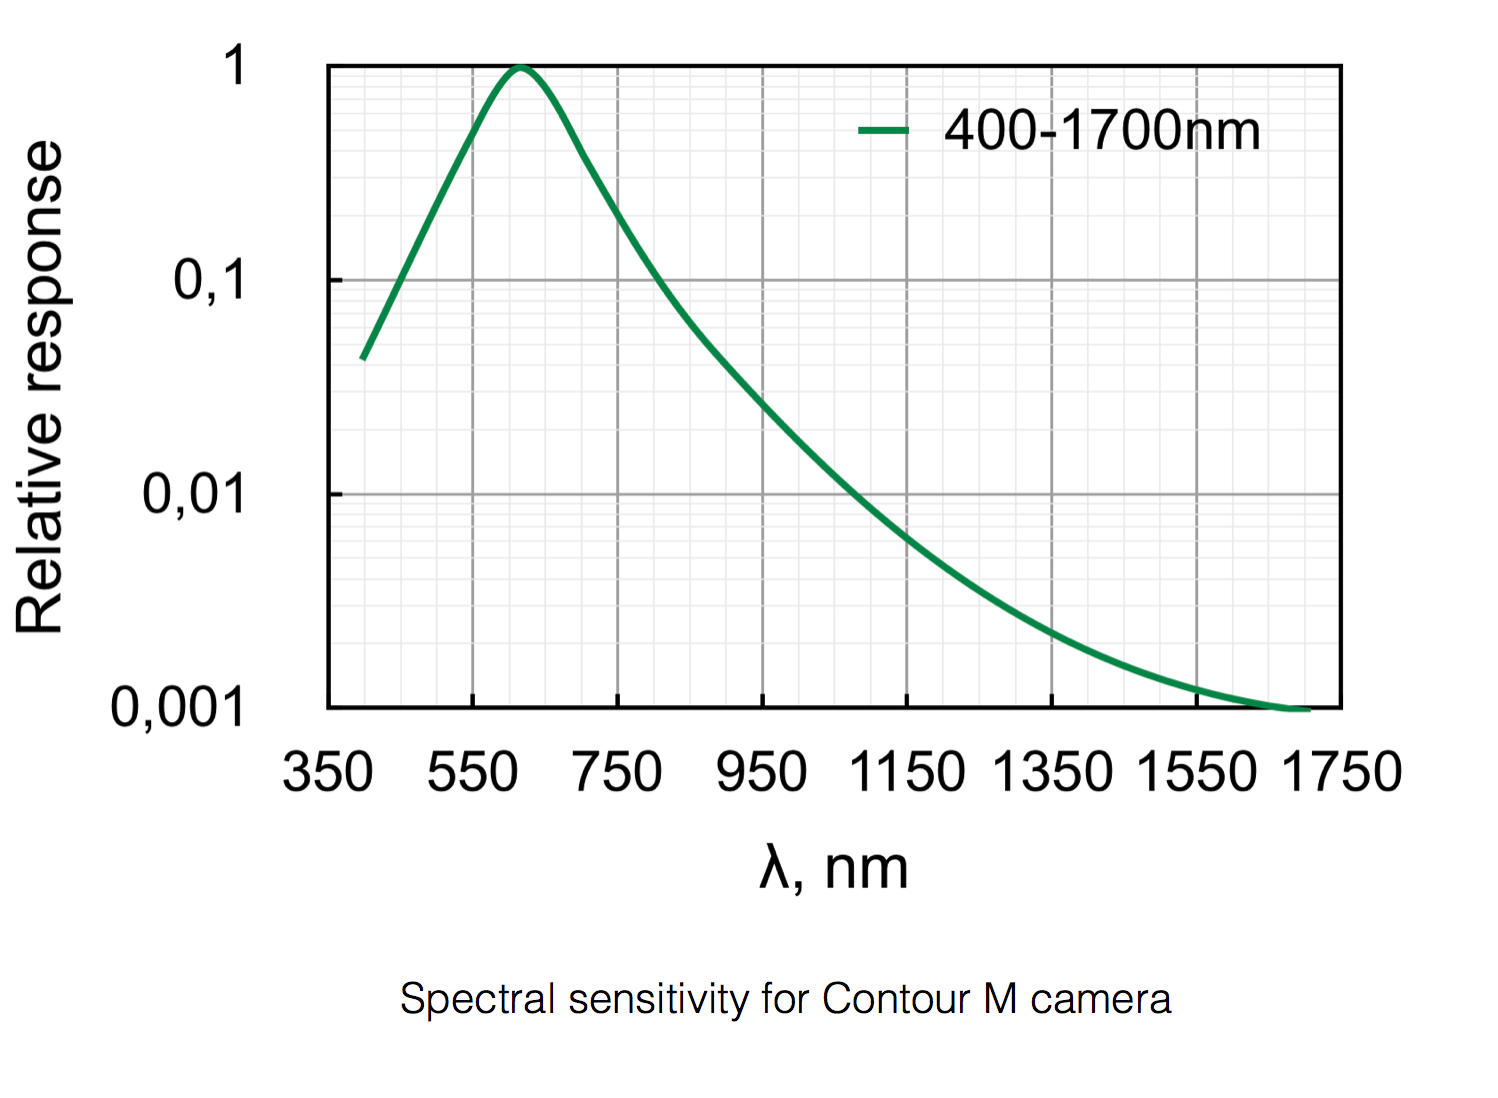 Contour-M spectral response